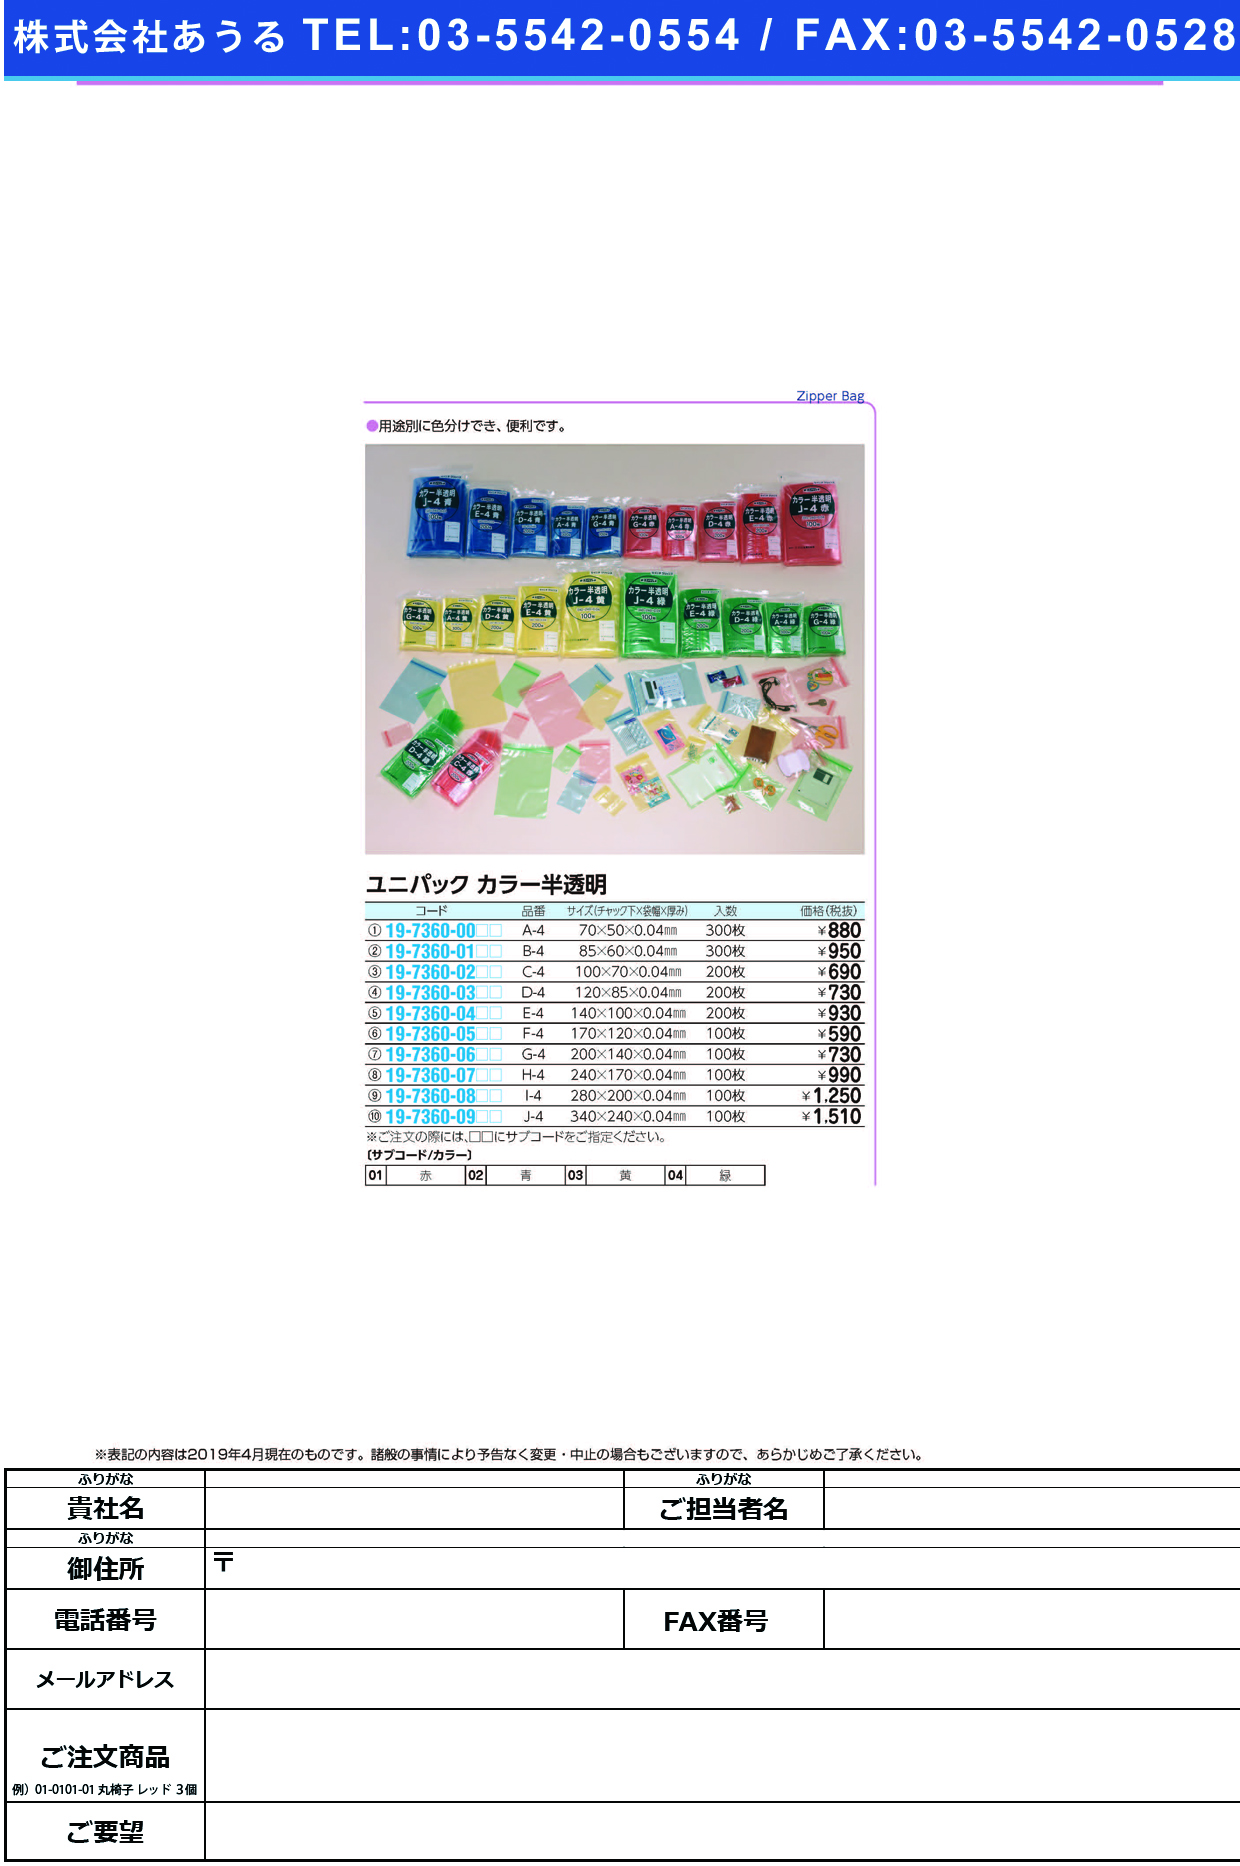 (19-7360-05)ユニパックカラー半透明 F-4(100ﾏｲｲﾘ) ﾕﾆﾊﾟｯｸｶﾗｰﾊﾝﾄｳﾒｲ 青【1袋単位】【2019年カタログ商品】